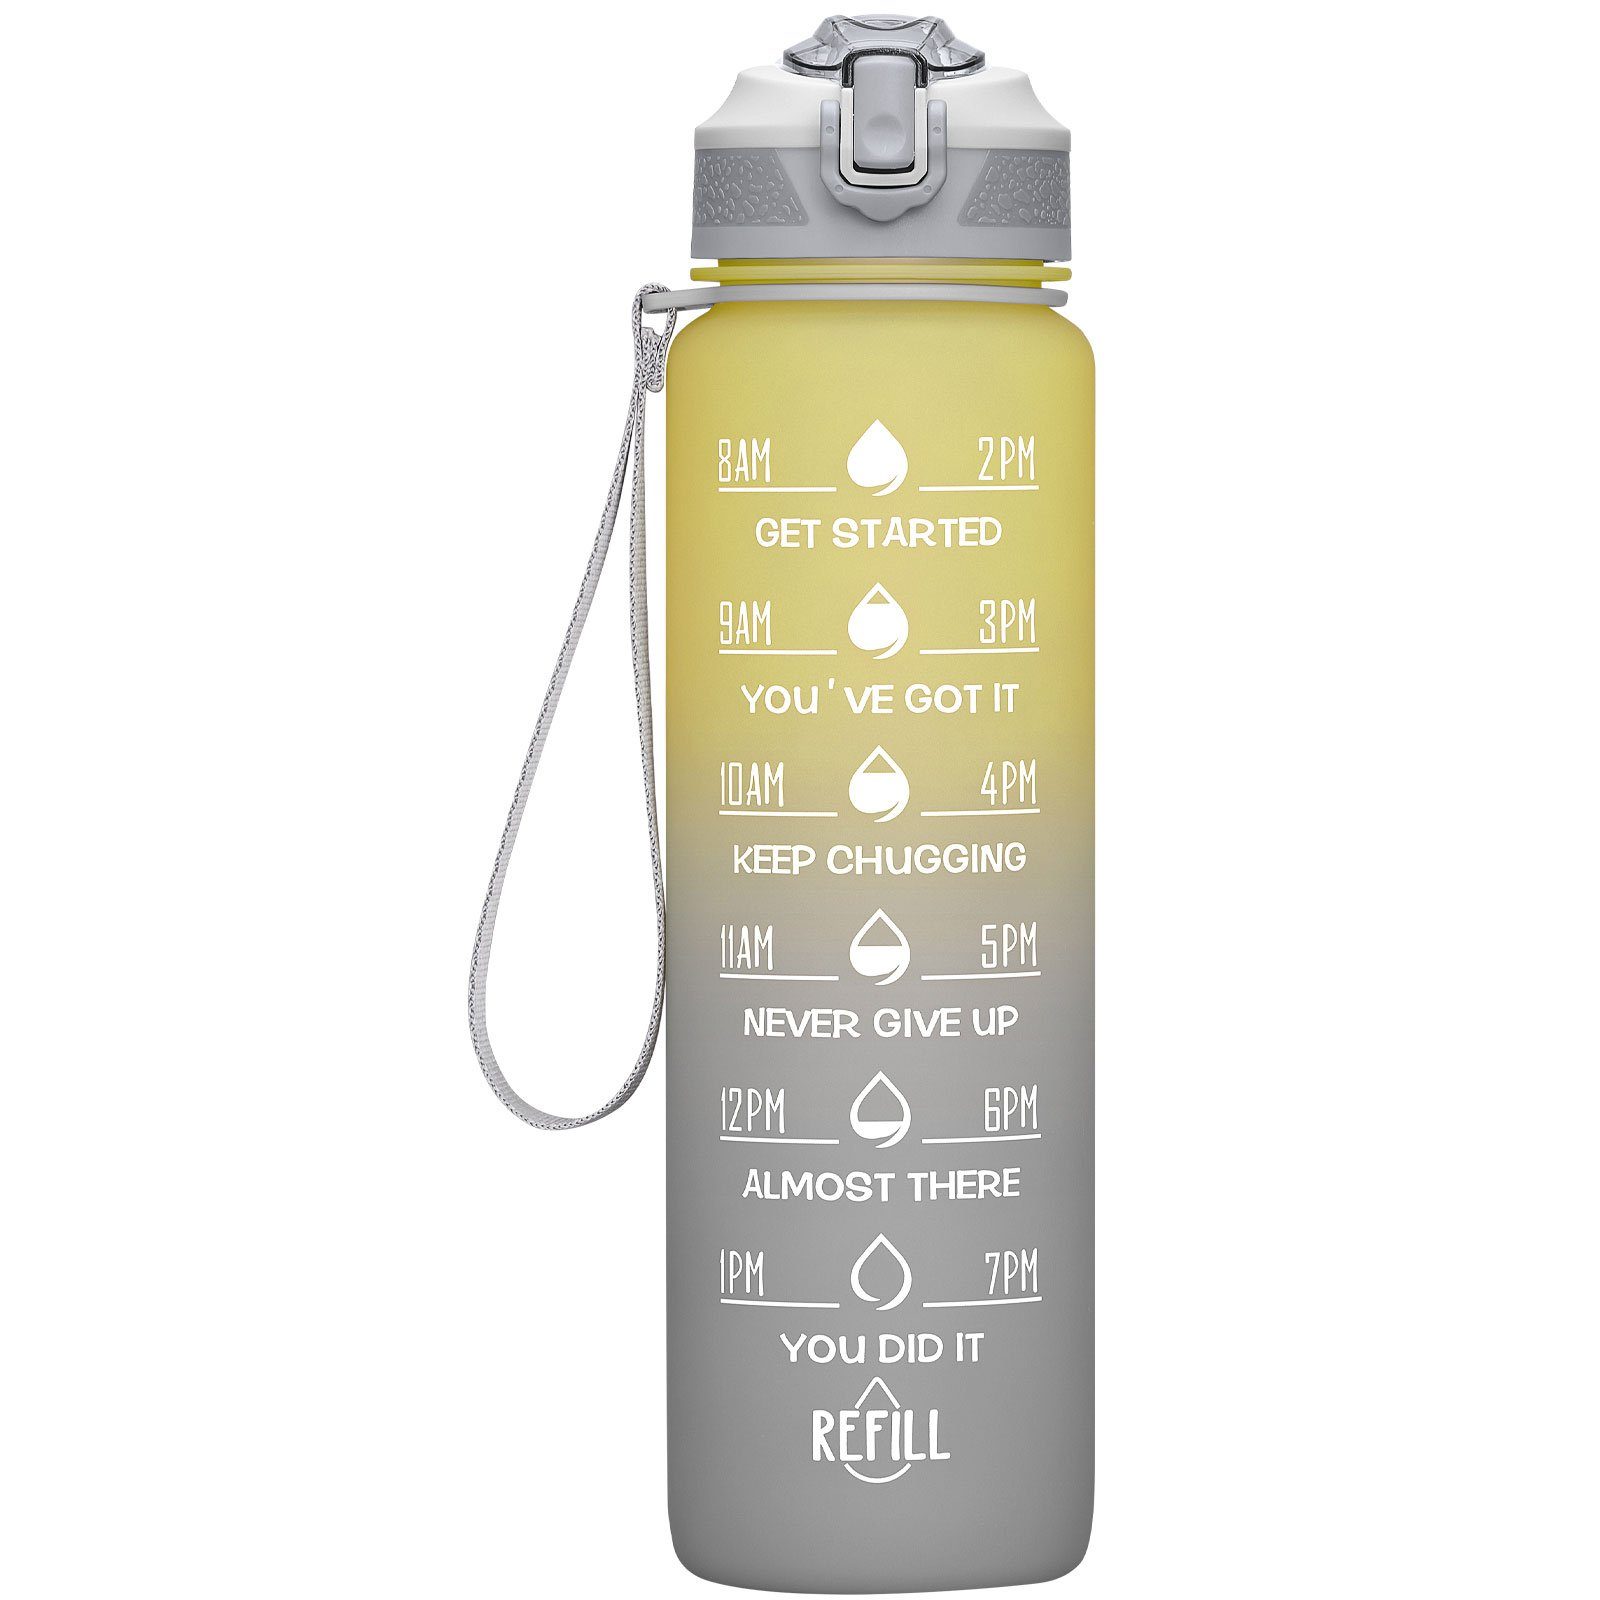 OKWISH Gelb/Grau Fitness Wasserflasche Camping BPA-Frei Auslaufsicher Zeitmarkierung Outdoor Liter Sport Fahrrad 1L, 1 Wandern Trinkflasche und Strohhalm Sportflasche